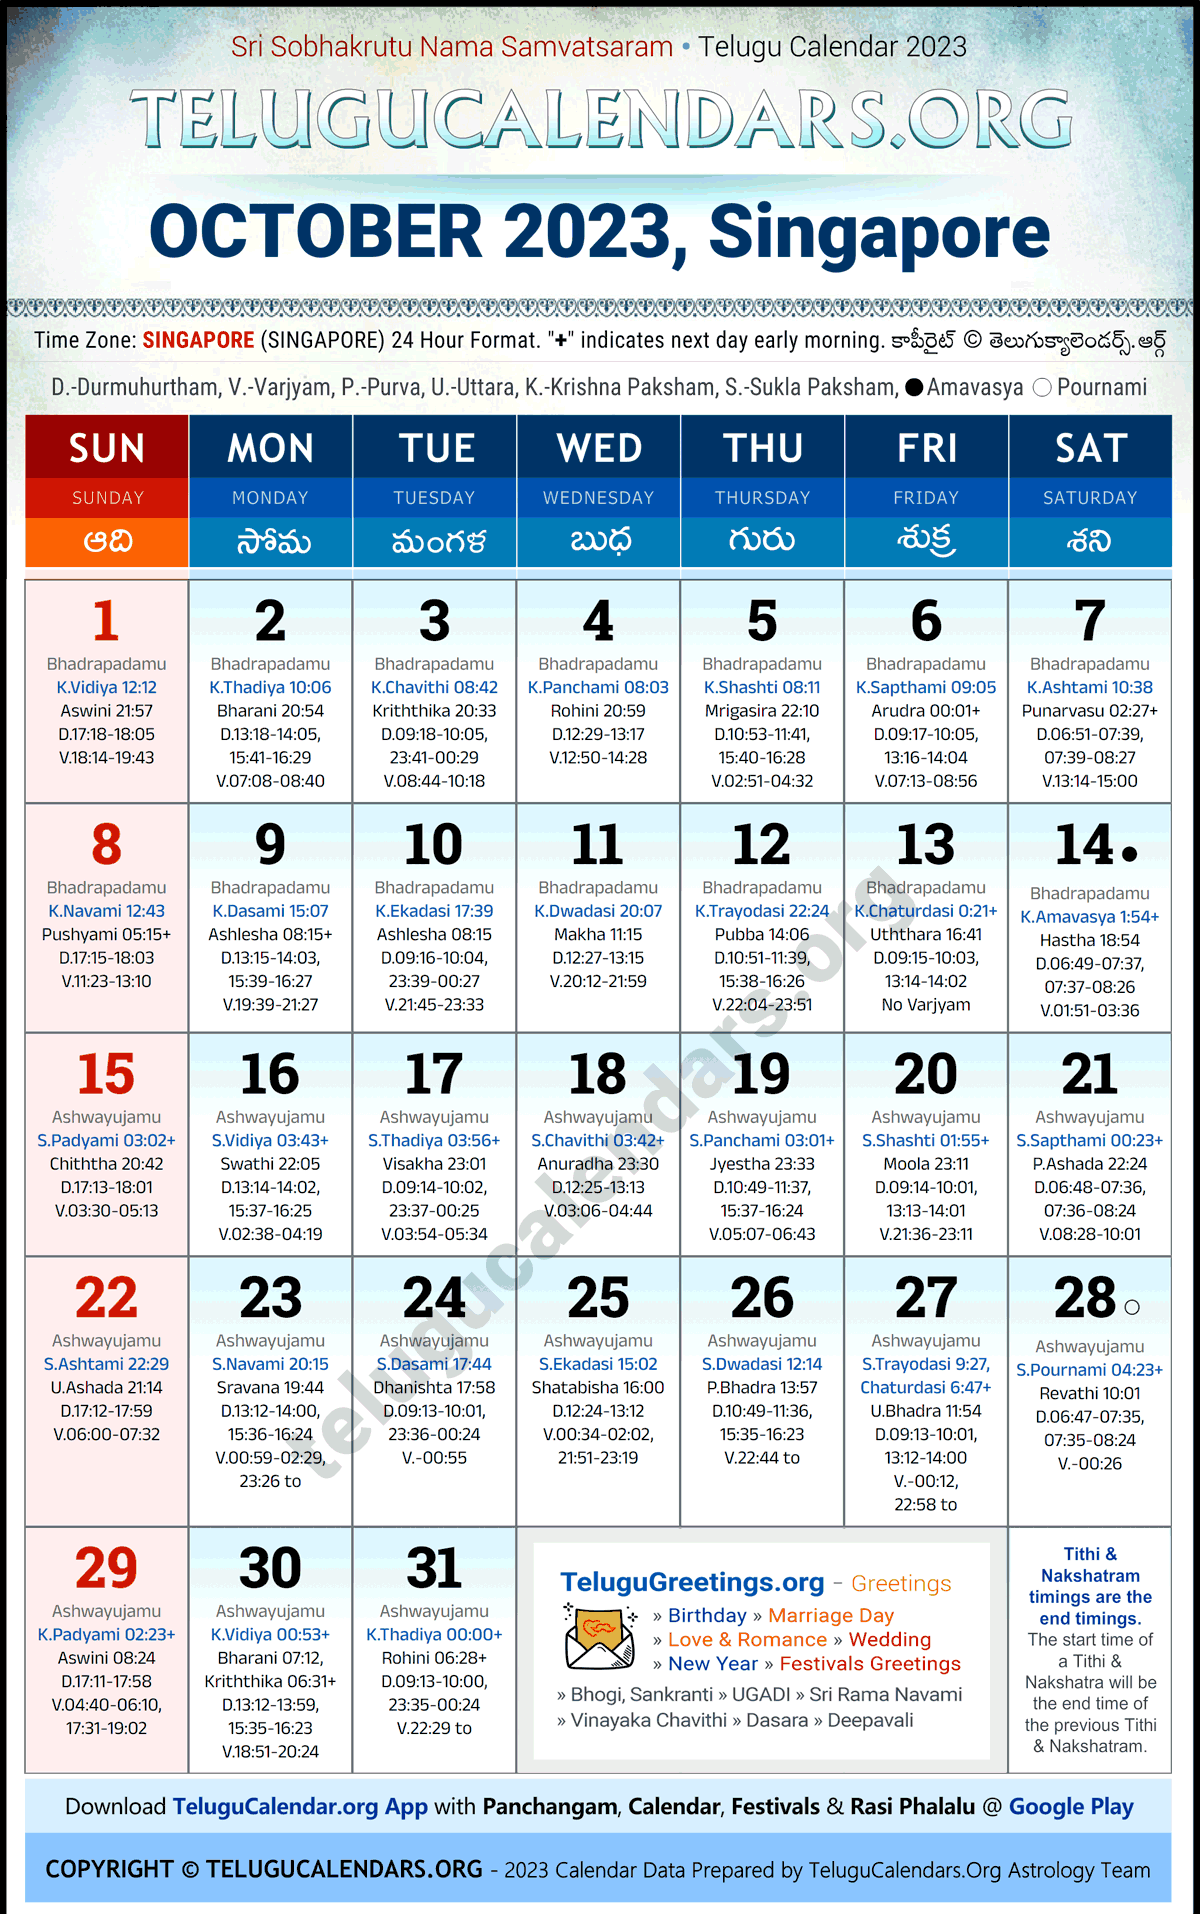 Telugu Calendar 2023 October Festivals for Singapore